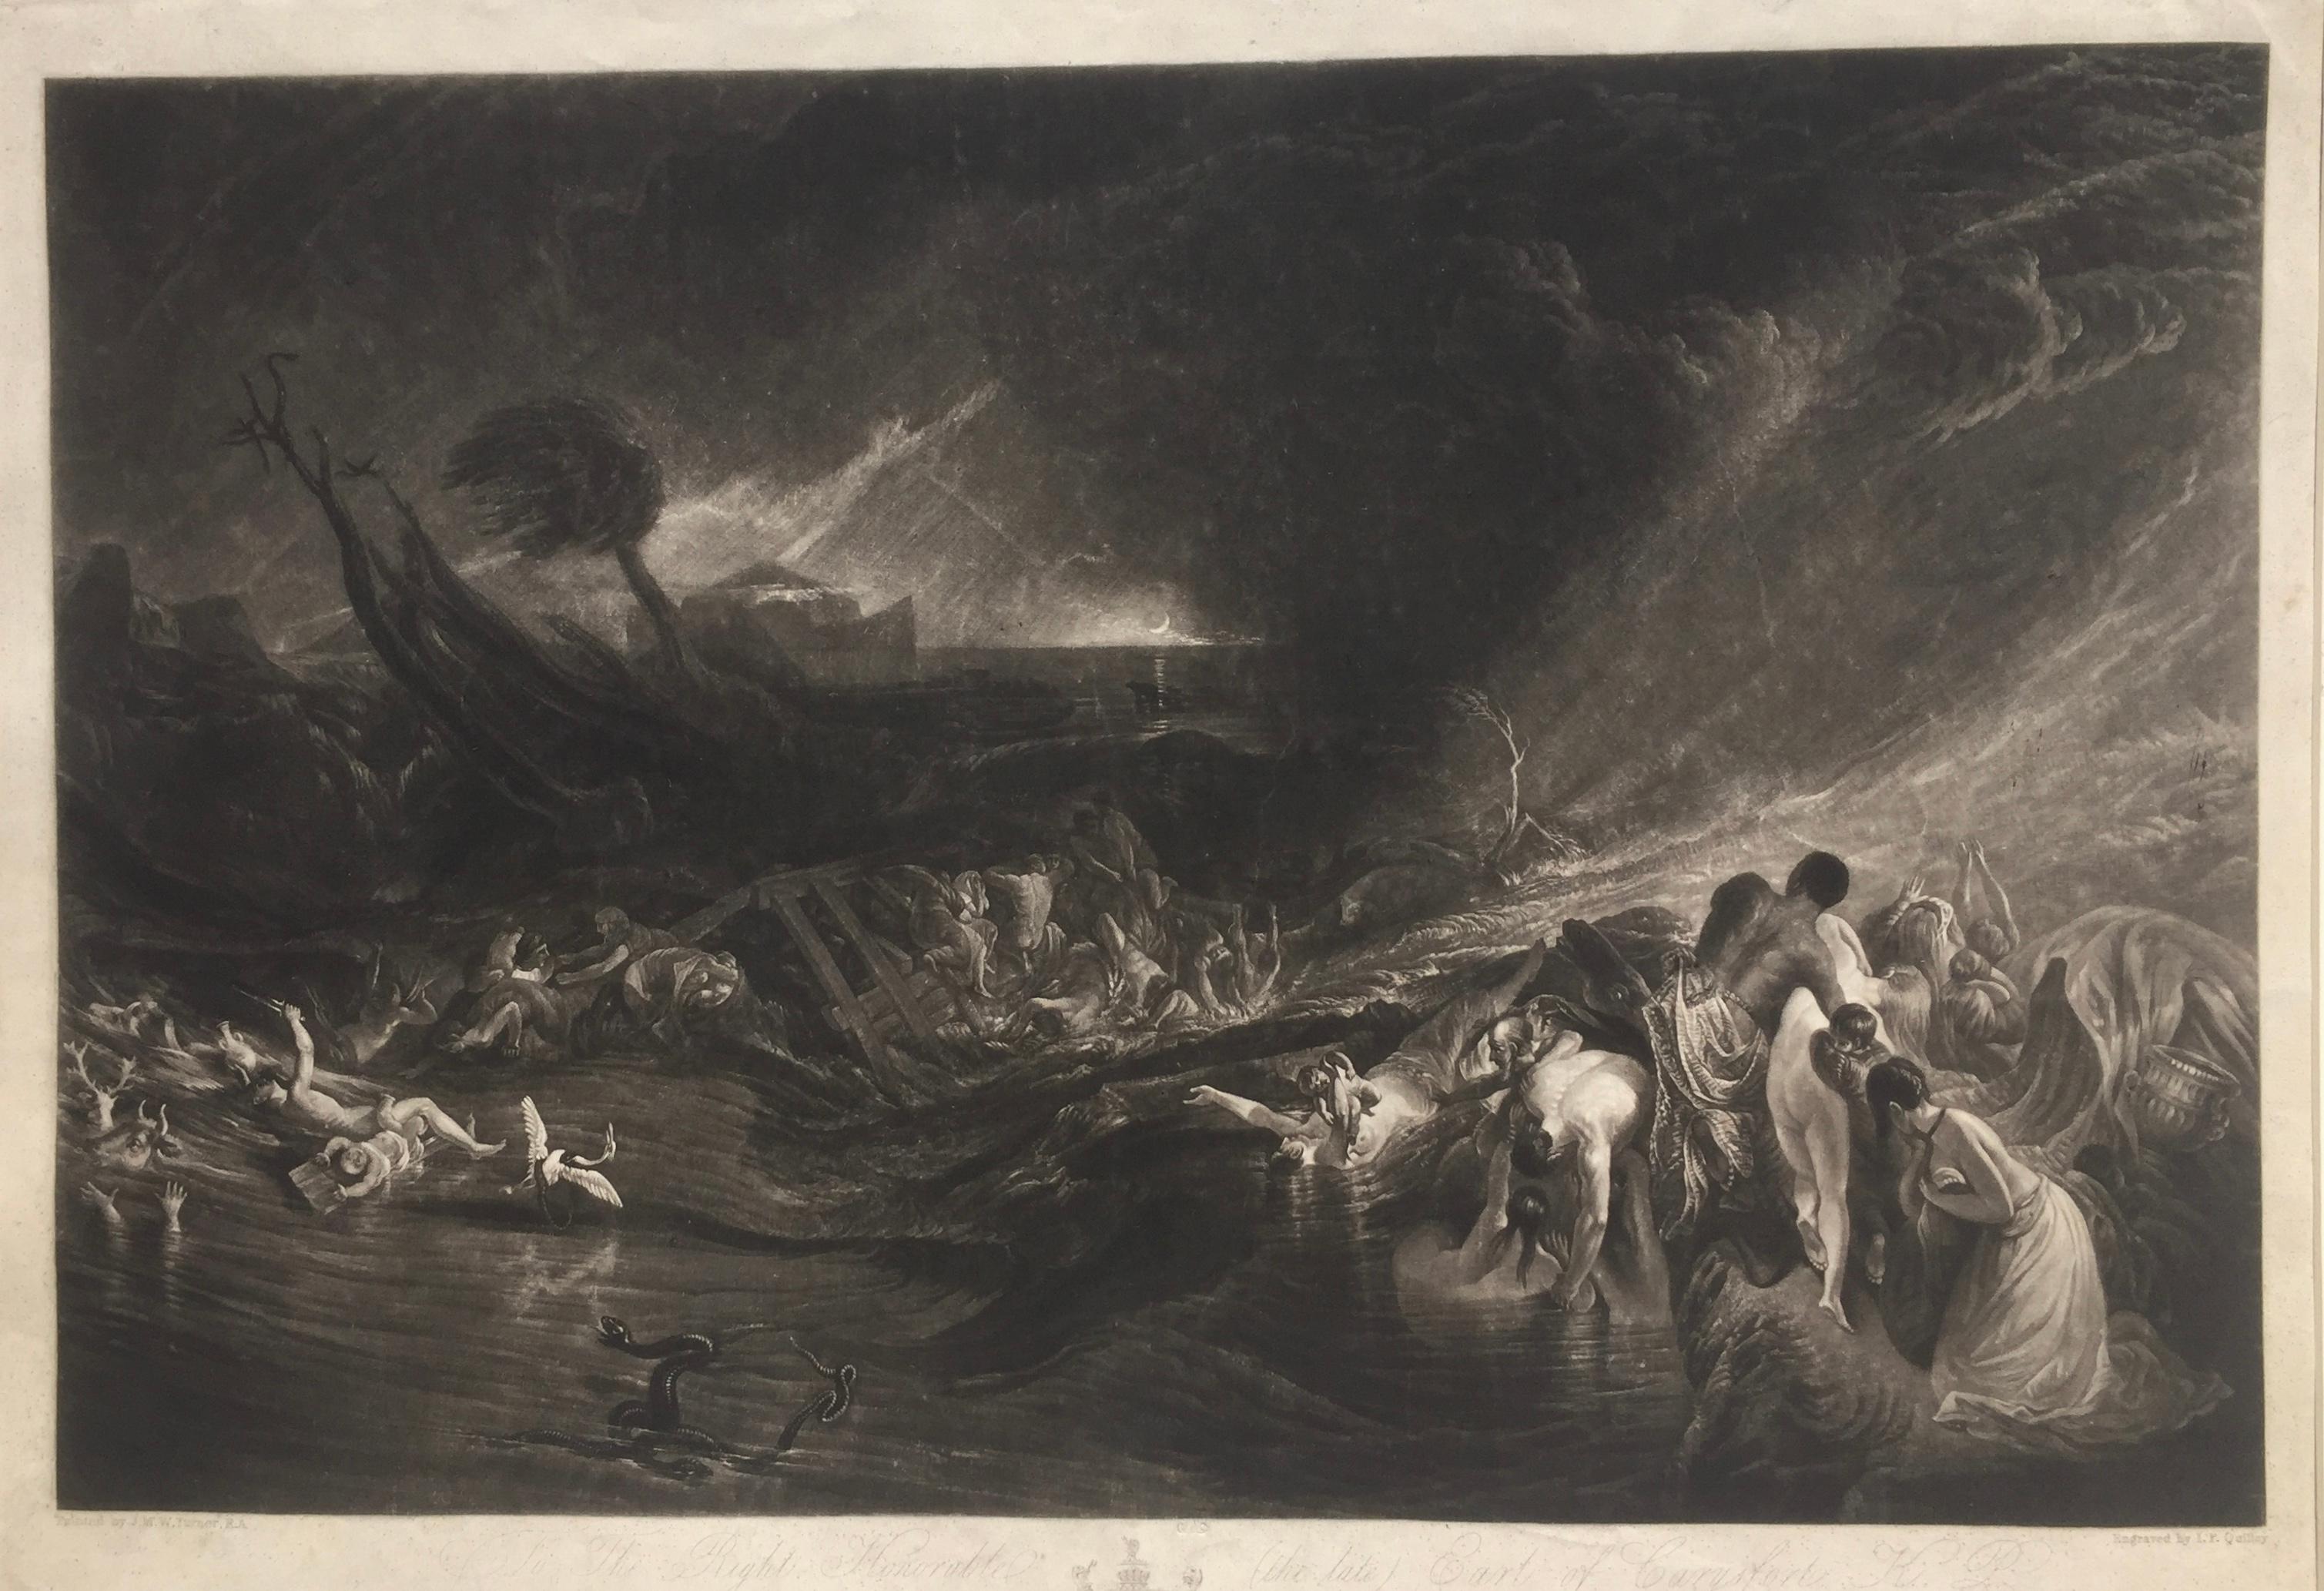 Joseph Mallord William Turner Landscape Print - The Deluge -  JOSEPH MALLORD WILLIAM  TURNER (1775 - 1851)